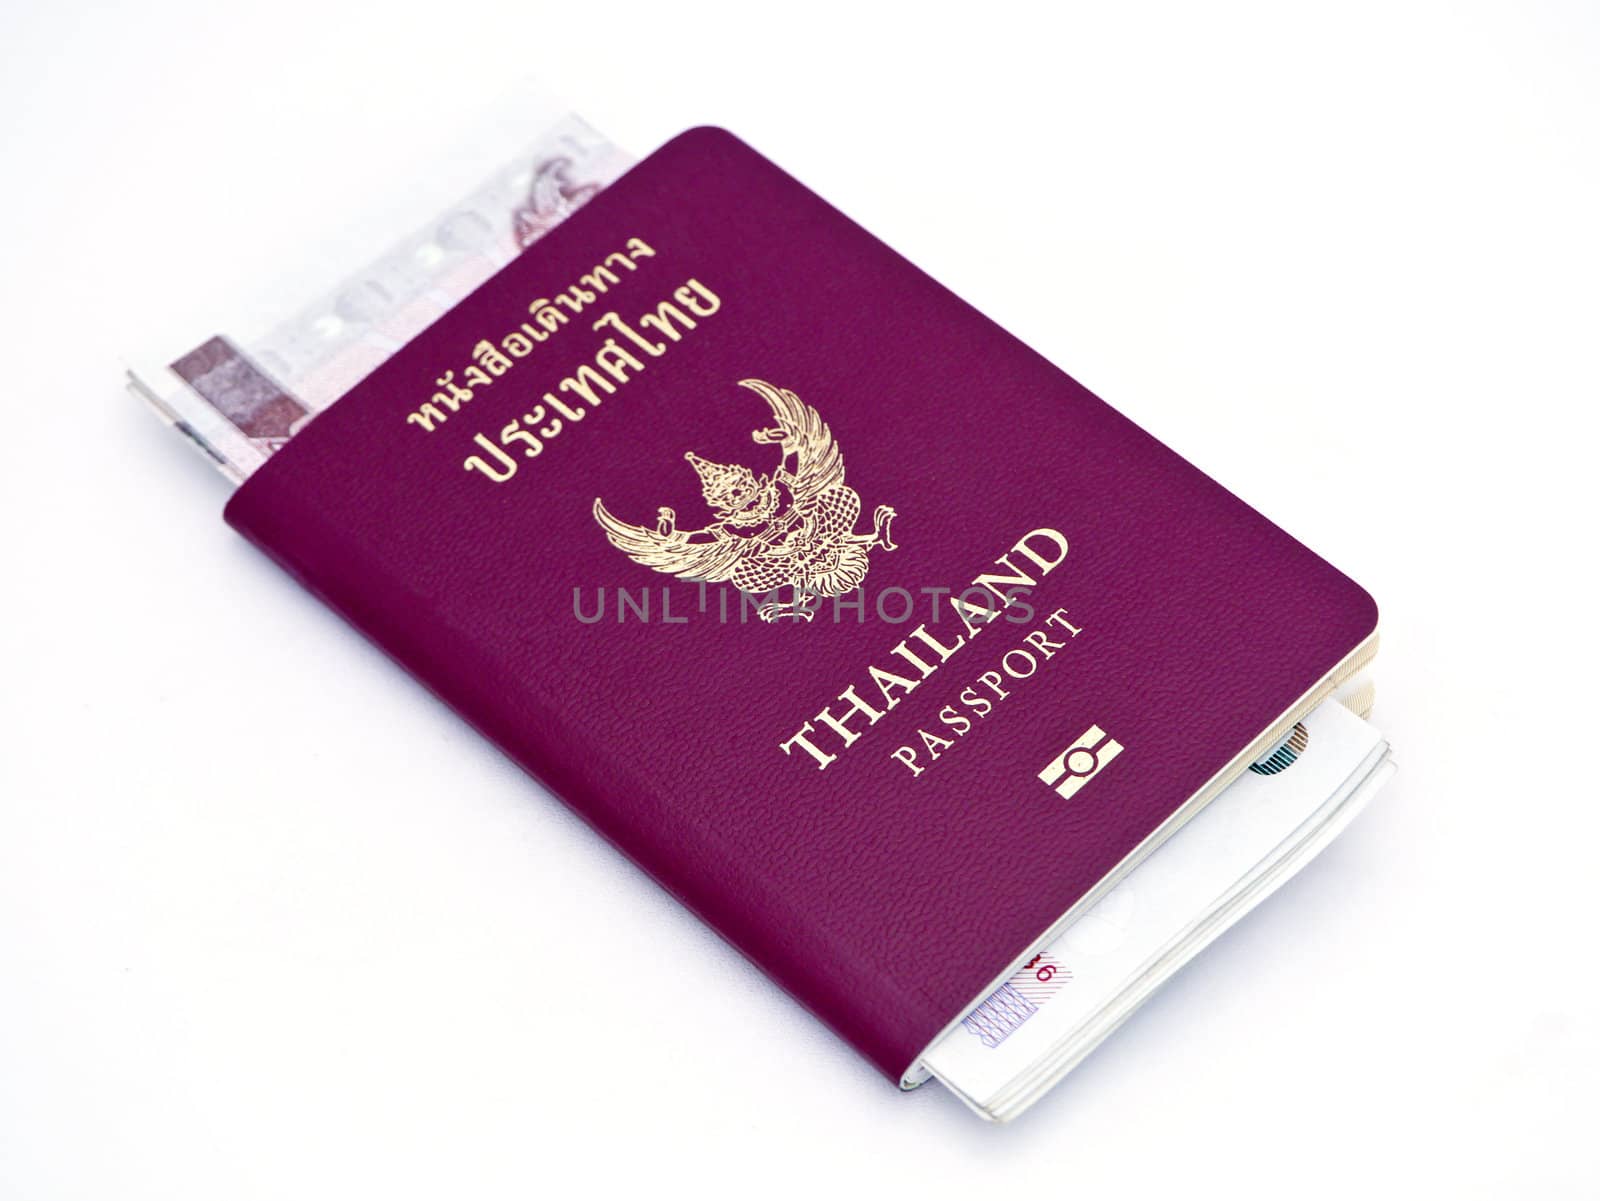 Thailand Passport by Noppharat_th